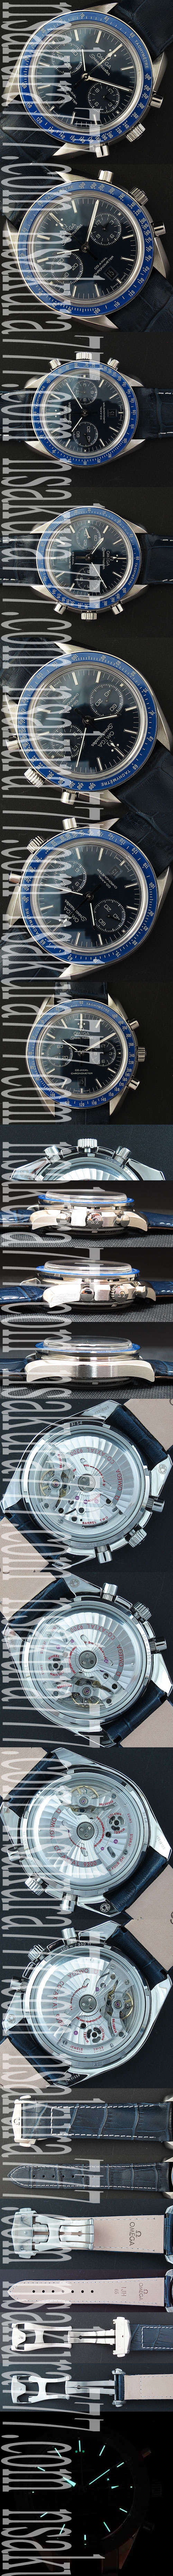 レプリカ時計オメガ スピードマスター57 クロノグラフ, Asian 7750搭載! - ウインドウを閉じる